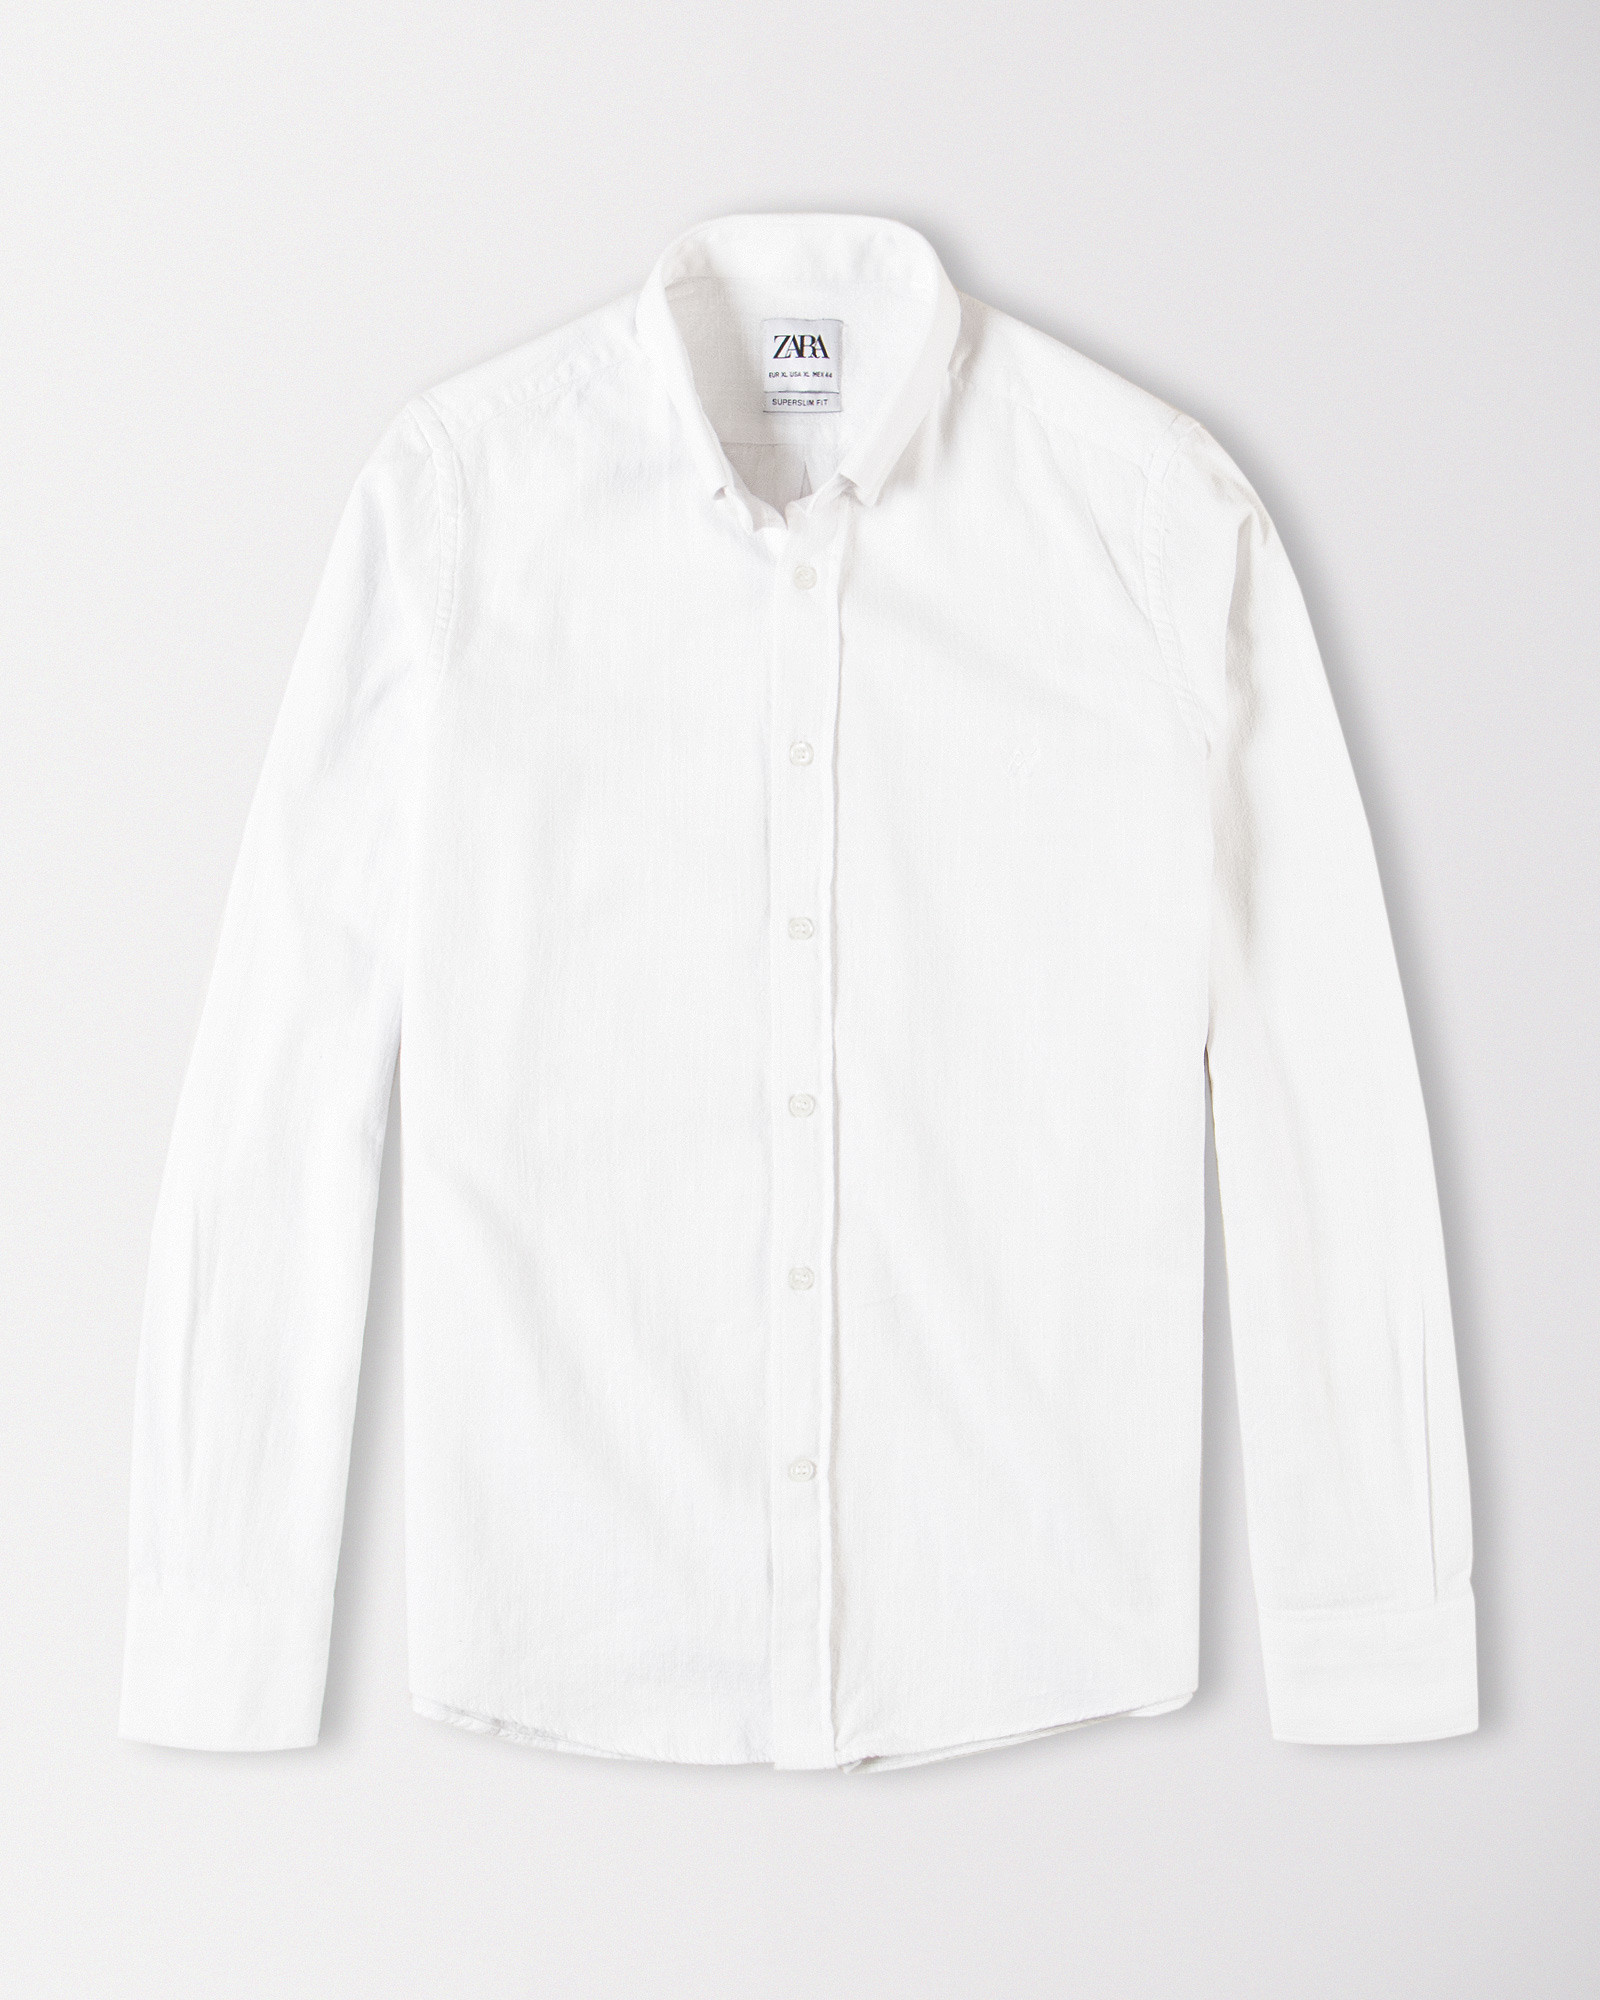 پیراهن مردانه سفید 19352135